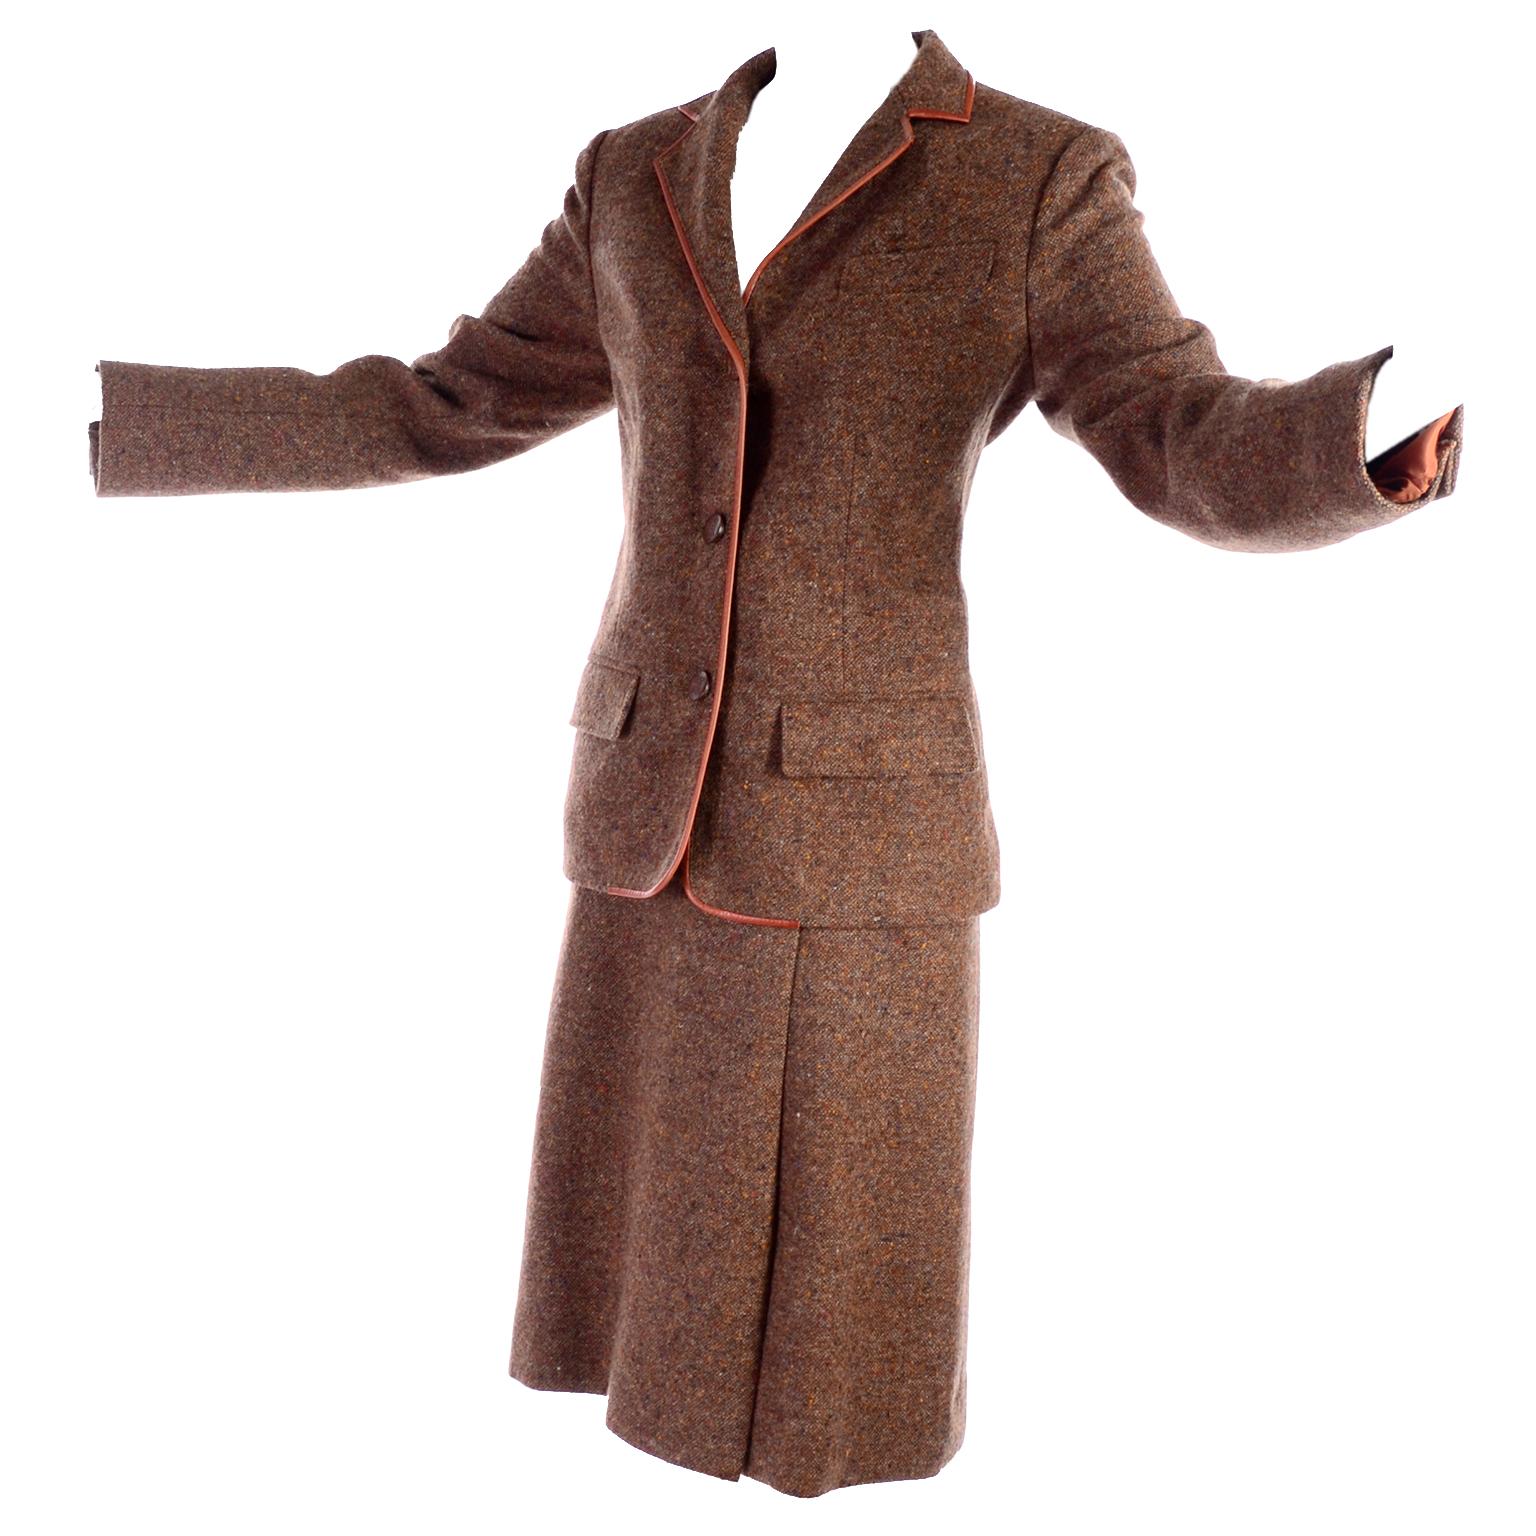 1970s Hermes Vintage Suit W/ Skirt & Blazer in Brown Wool Tweed W Leather Trim